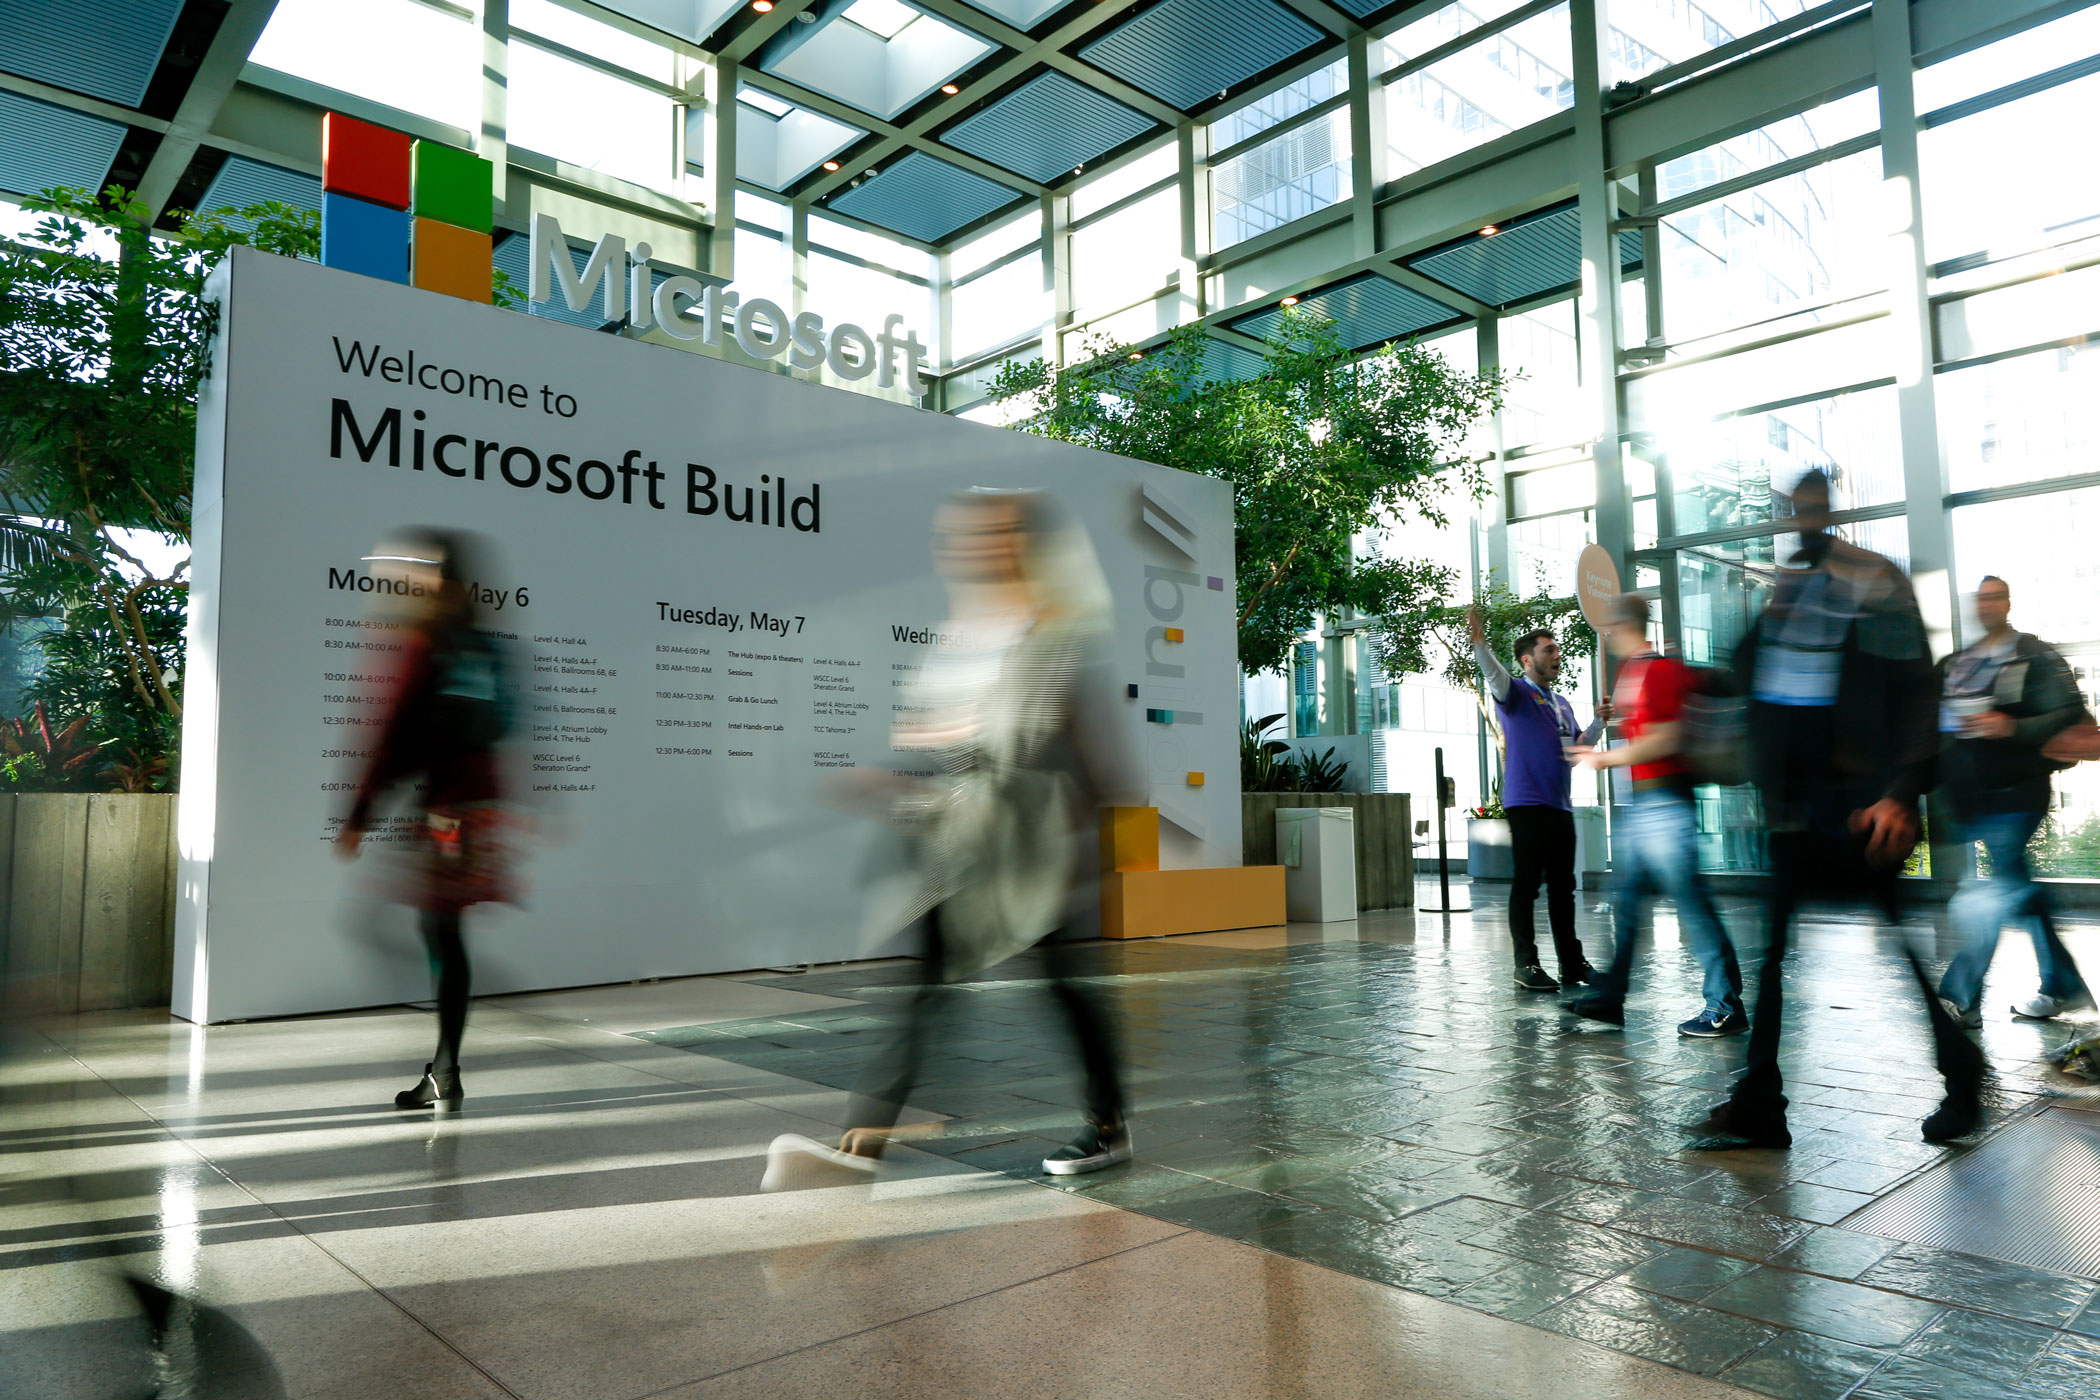 Spoločnosť Microsoft pri príležitosti výročnej konferencie Build 2019 predstavila nové technológie pre vývojárov, ktoré im umožnia vytvárať inteligentné a produktívne riešenia.